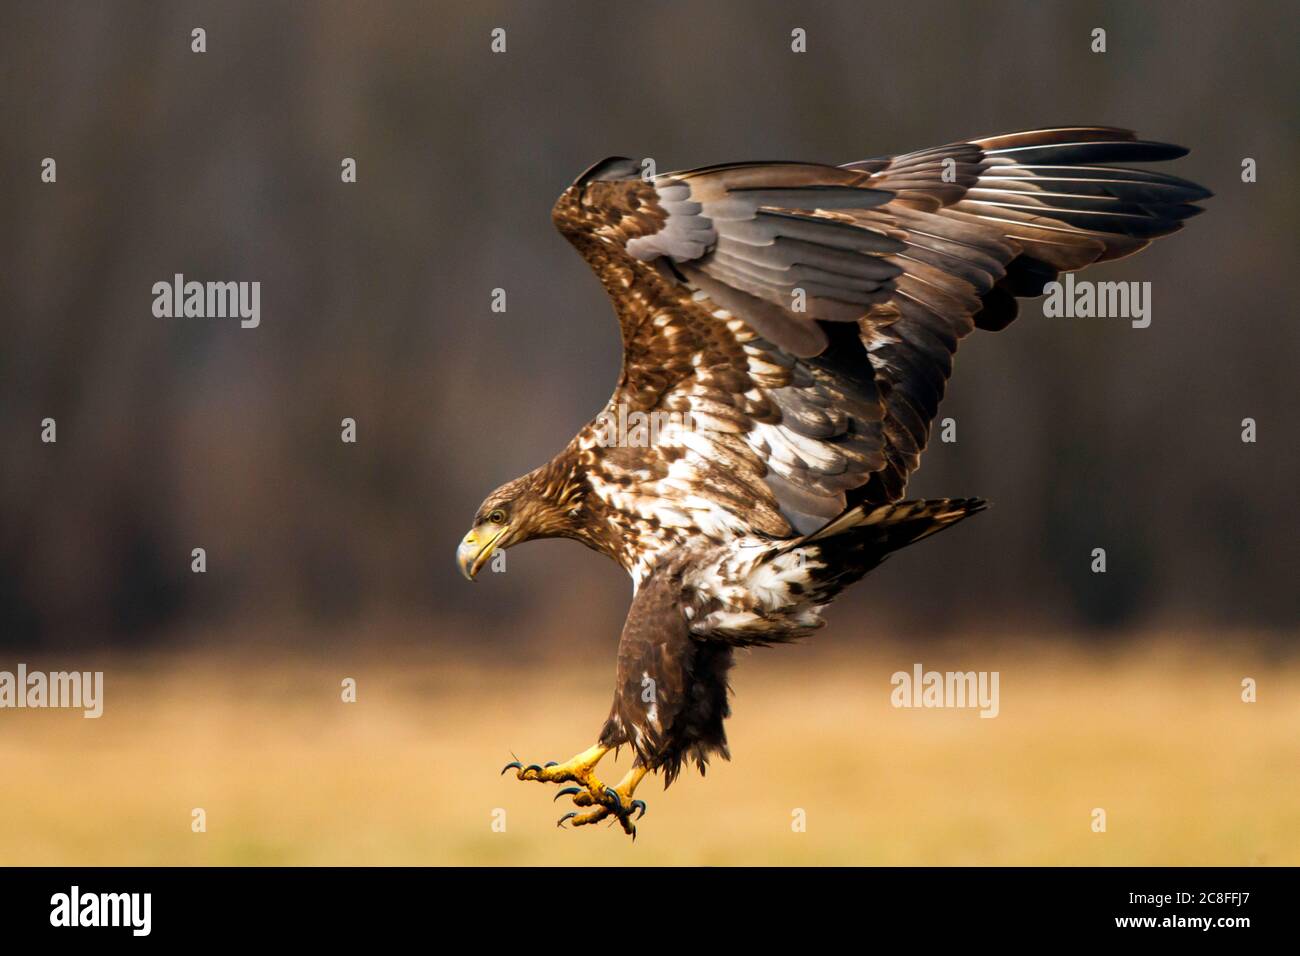 Aquila di mare dalla coda bianca (Haliaetus albicilla), atterraggio di uccelli immaturi a terra, vista laterale, Polonia, Kutno Foto Stock